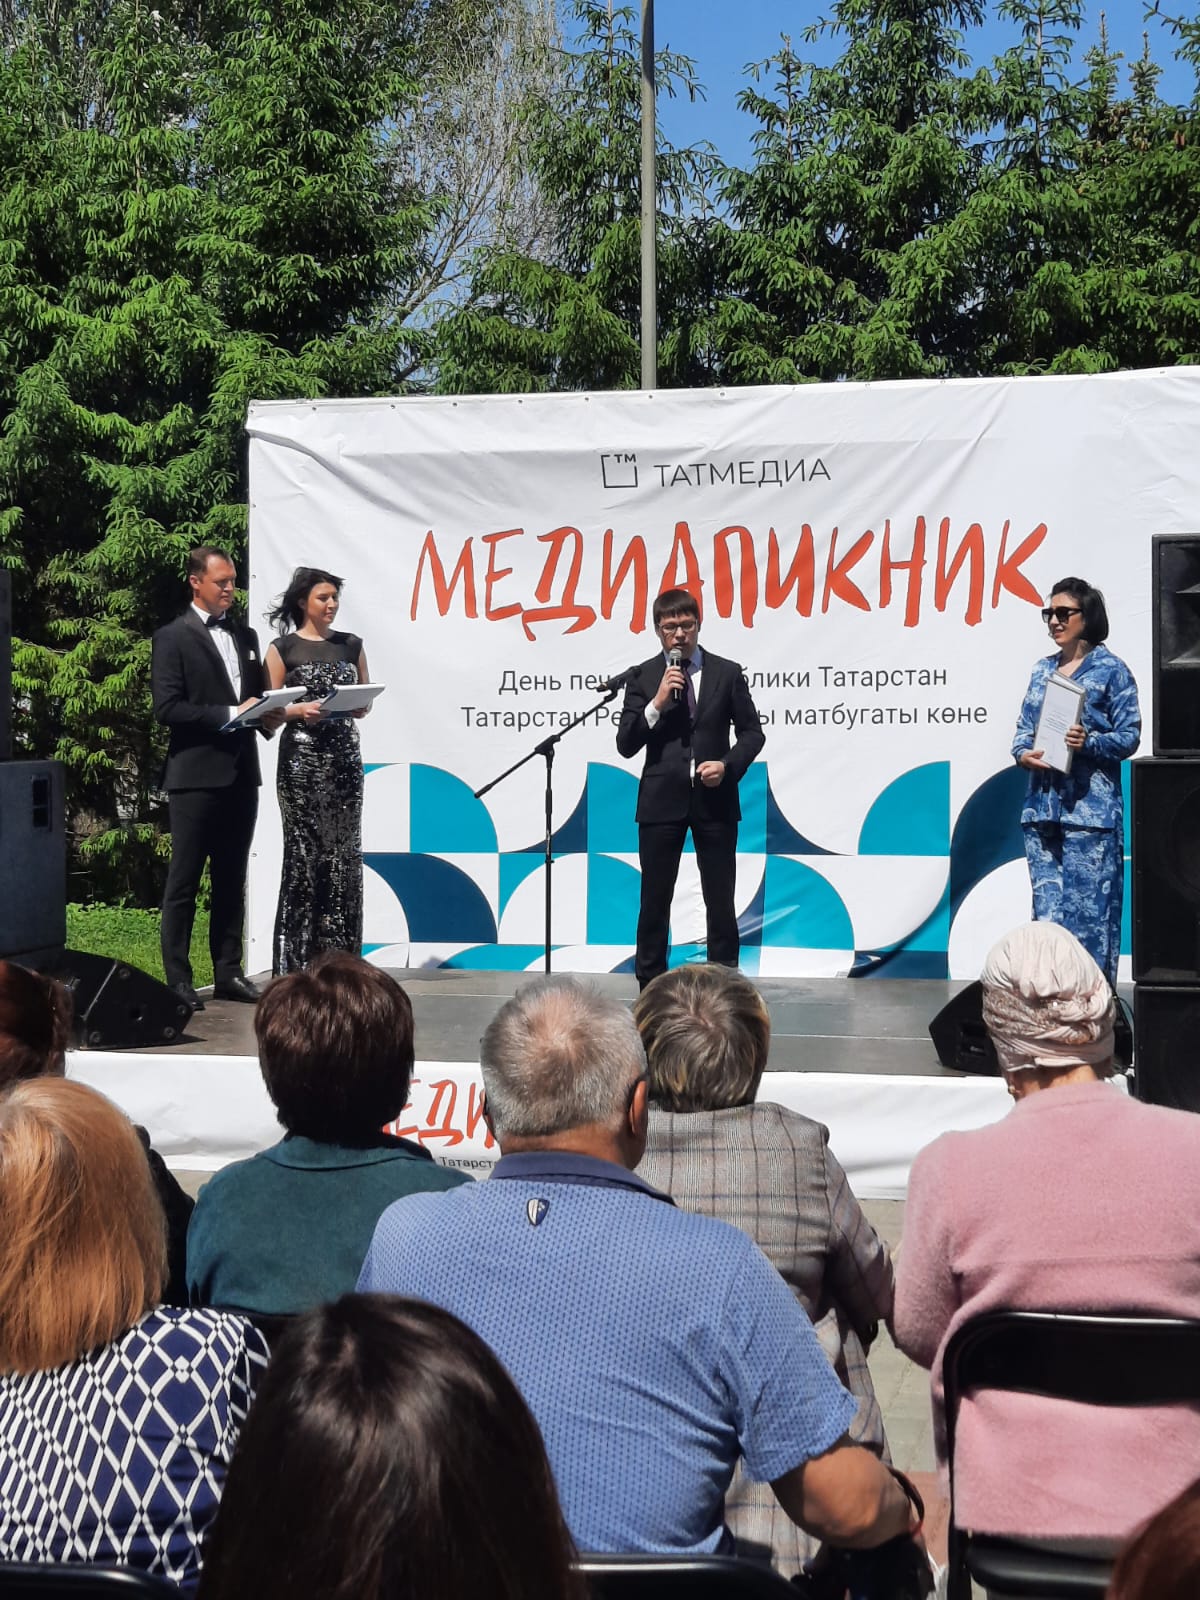 «Татмедиа»да Татарстан матбугаты көненә багышланган Медиапикник узды